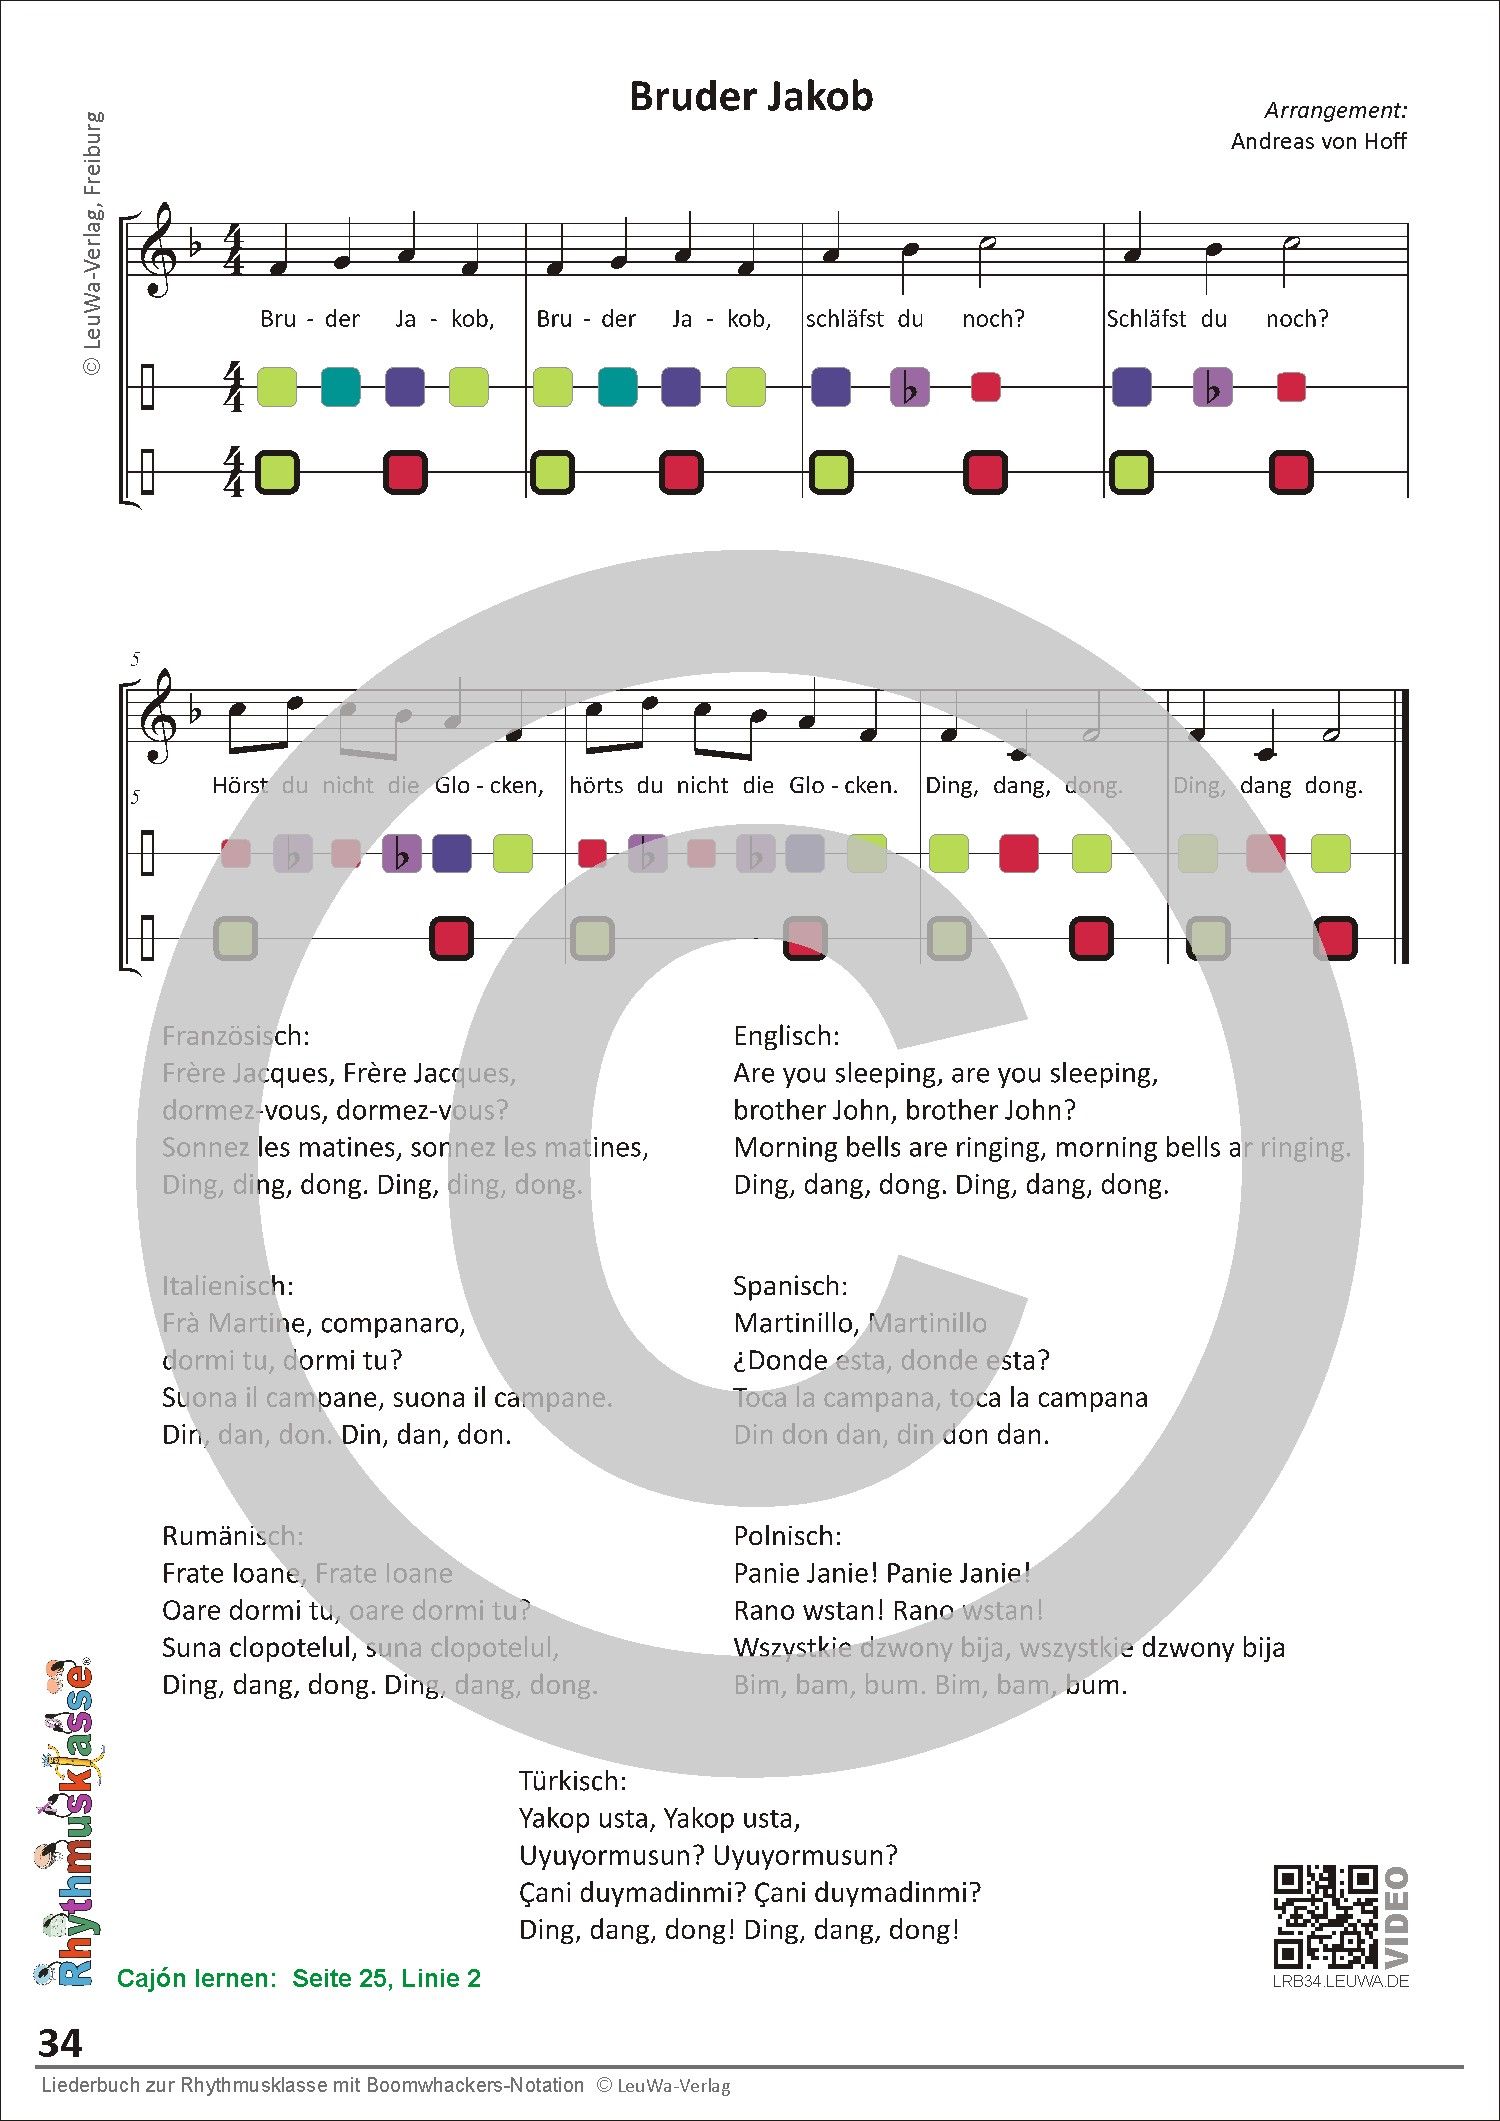 Auszug aus dem Liederheft für die Grundschule | Melodie, Rhythmus und Liedtexte | von Klasse 1 bis 4